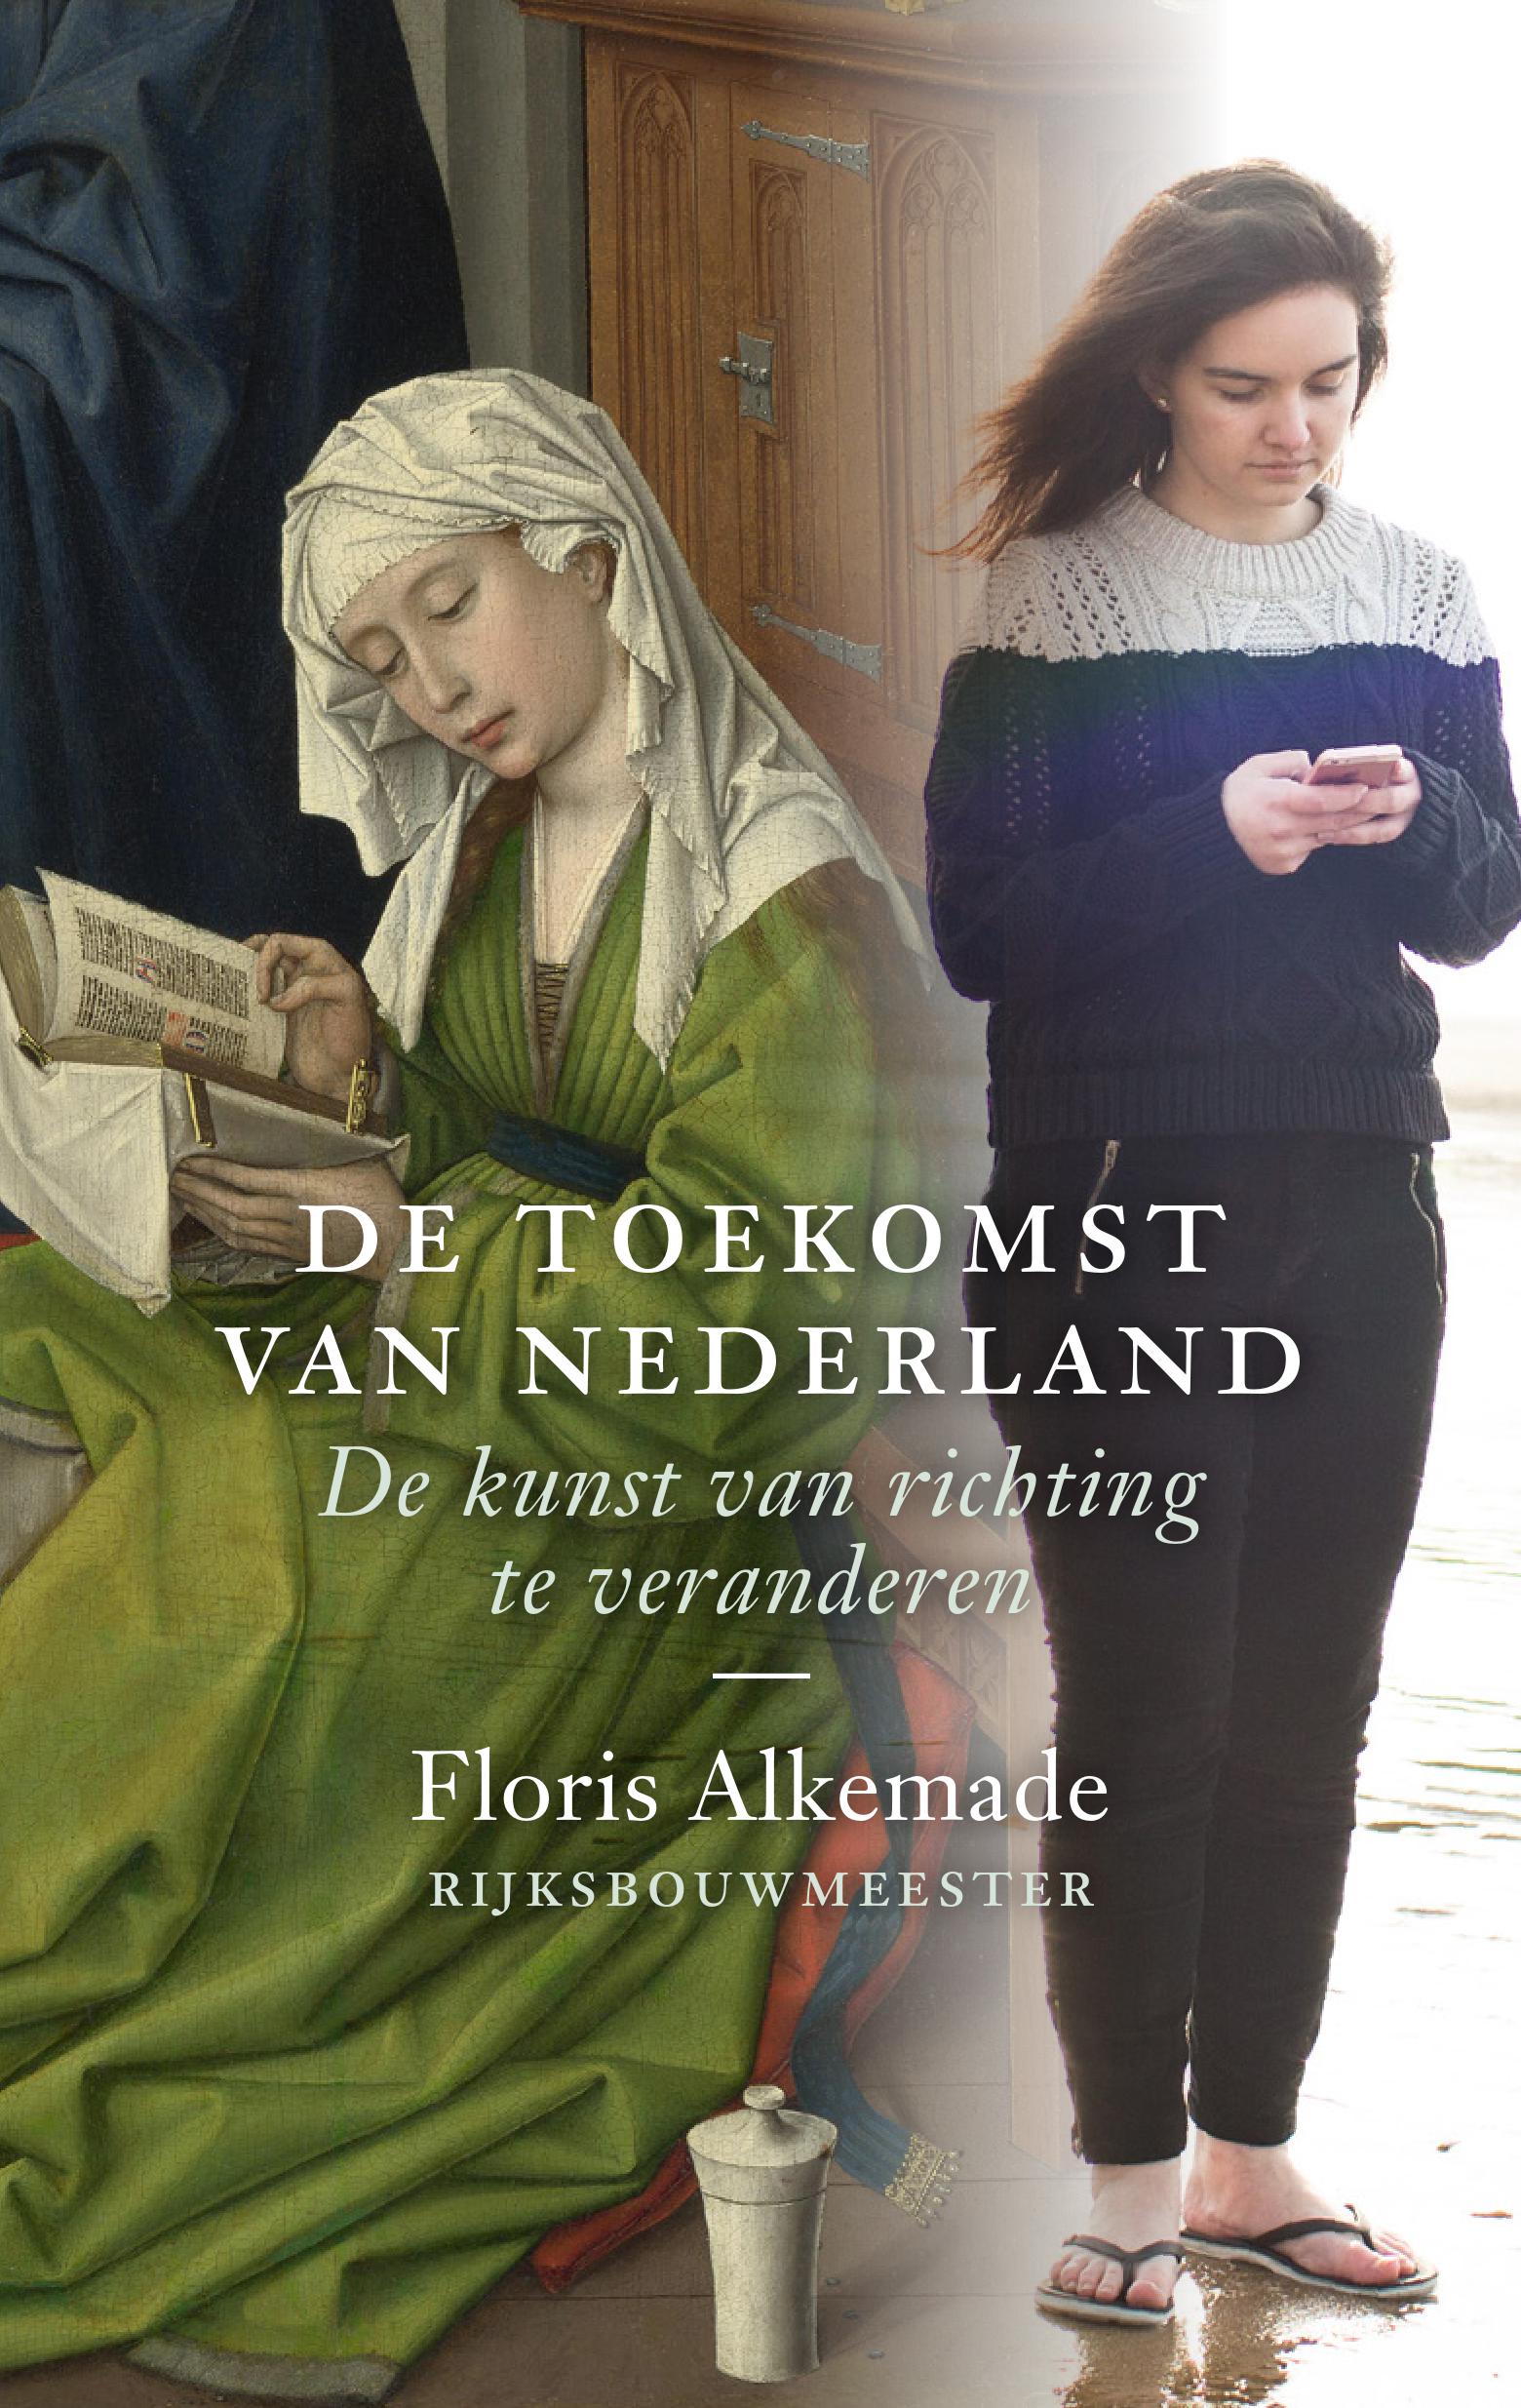 De toekomst van Nederland - Uitgeverij THOTH ISBN 978 90 6868 807 8